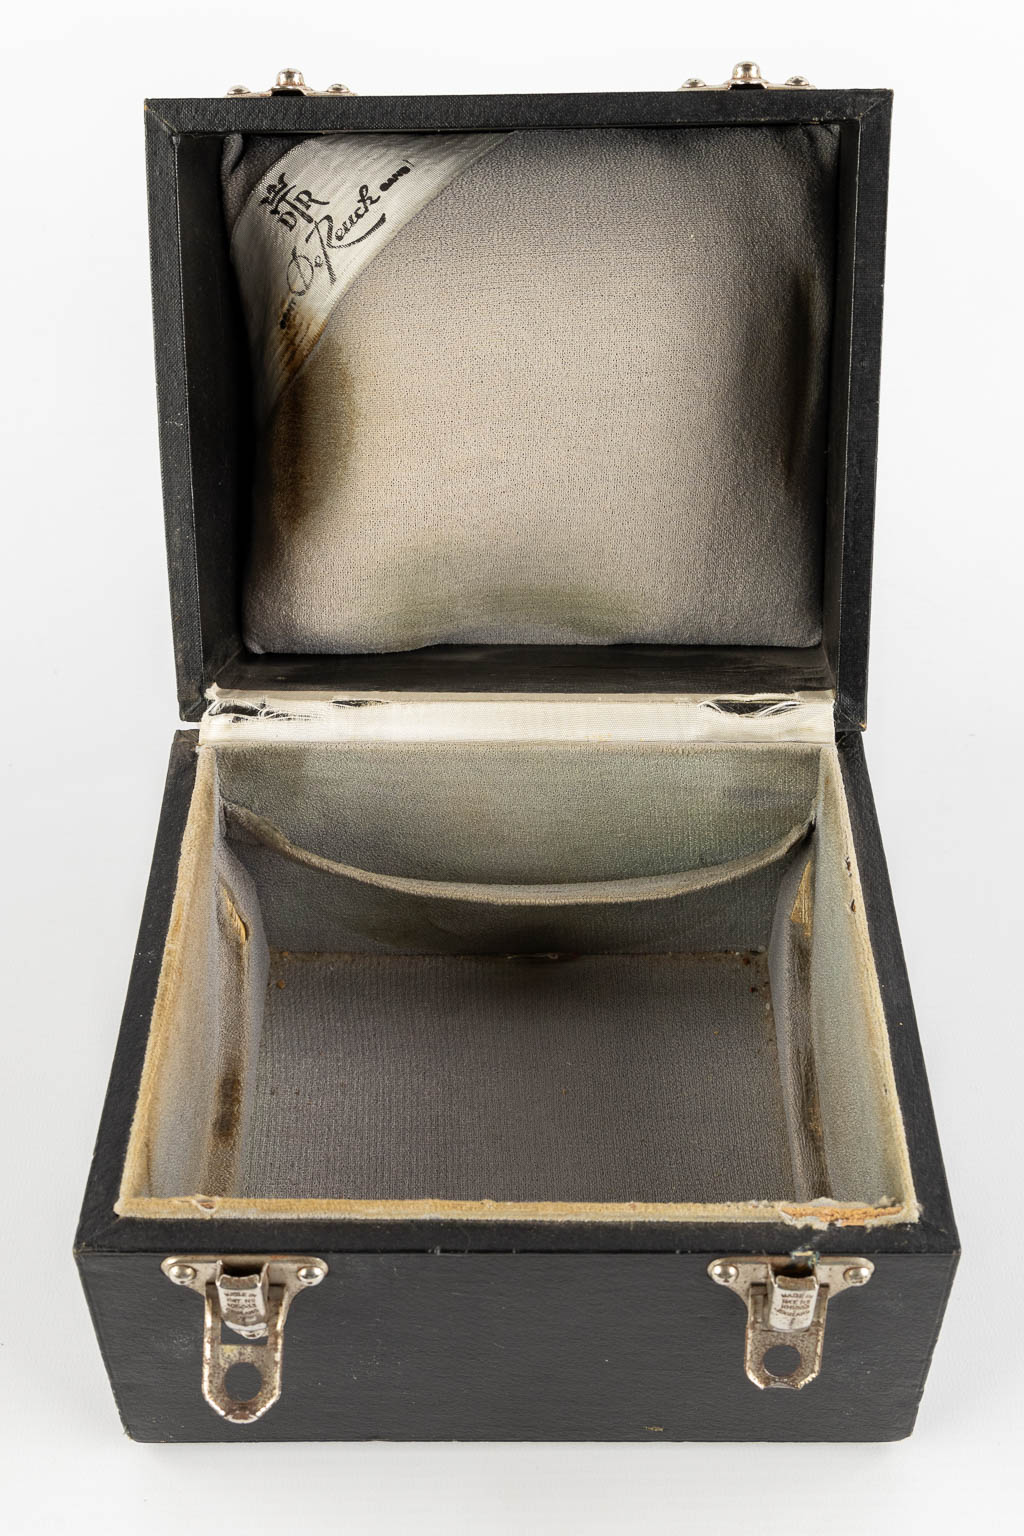 De Reuck, Gent, een zilveren kelk met bijhorende foudraal. 900/1000. 658g. 1949. (H:17 x D:13,5 cm)